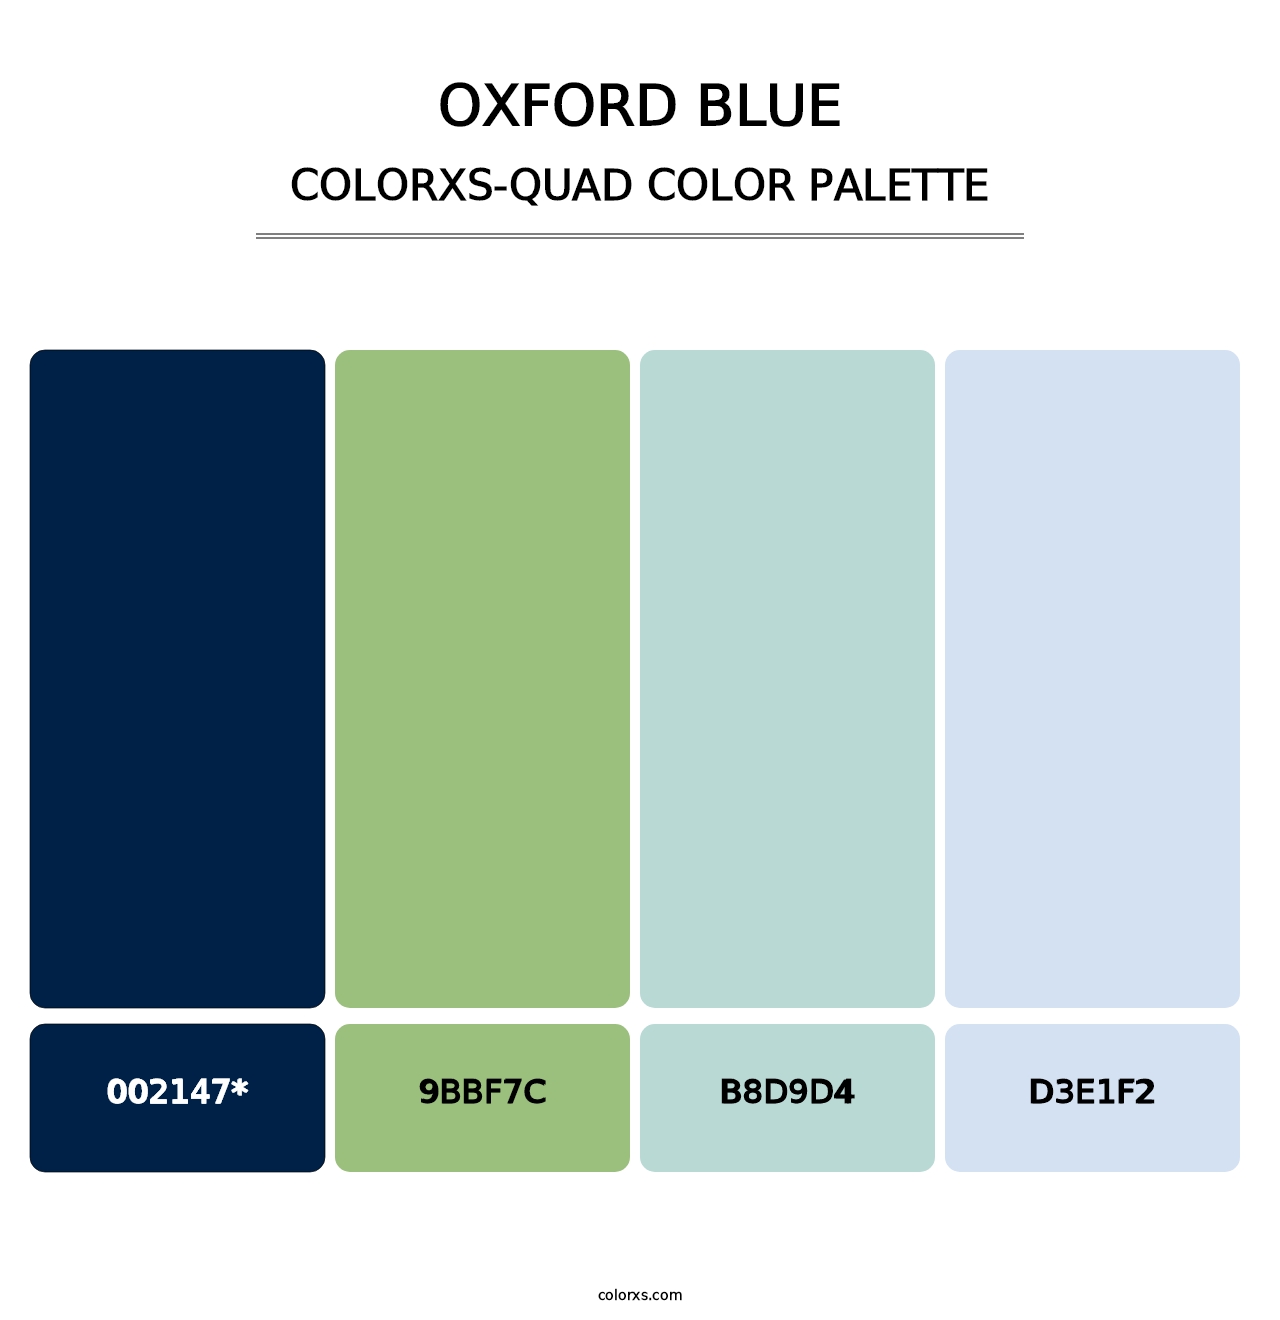 Oxford Blue - Colorxs Quad Palette